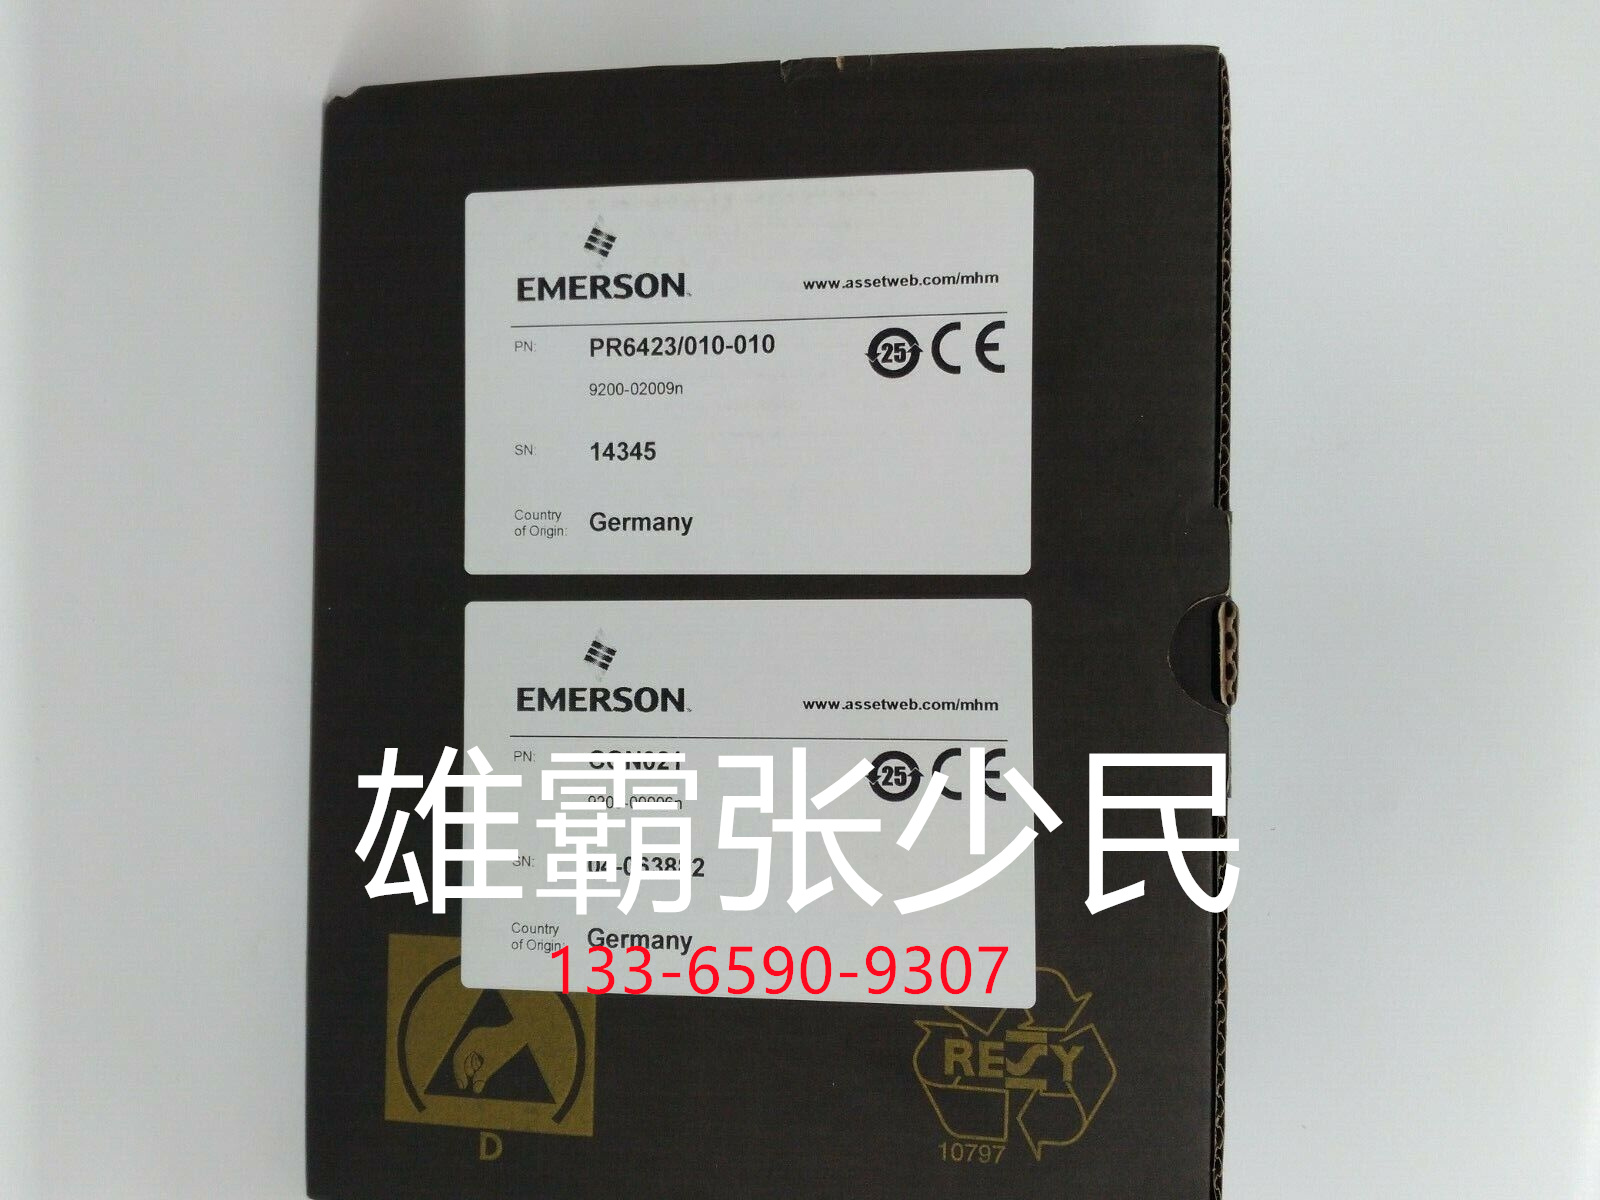 EMERSON EPRO 前置传感器带探头 库存现货CON021+PR6424/010-000 